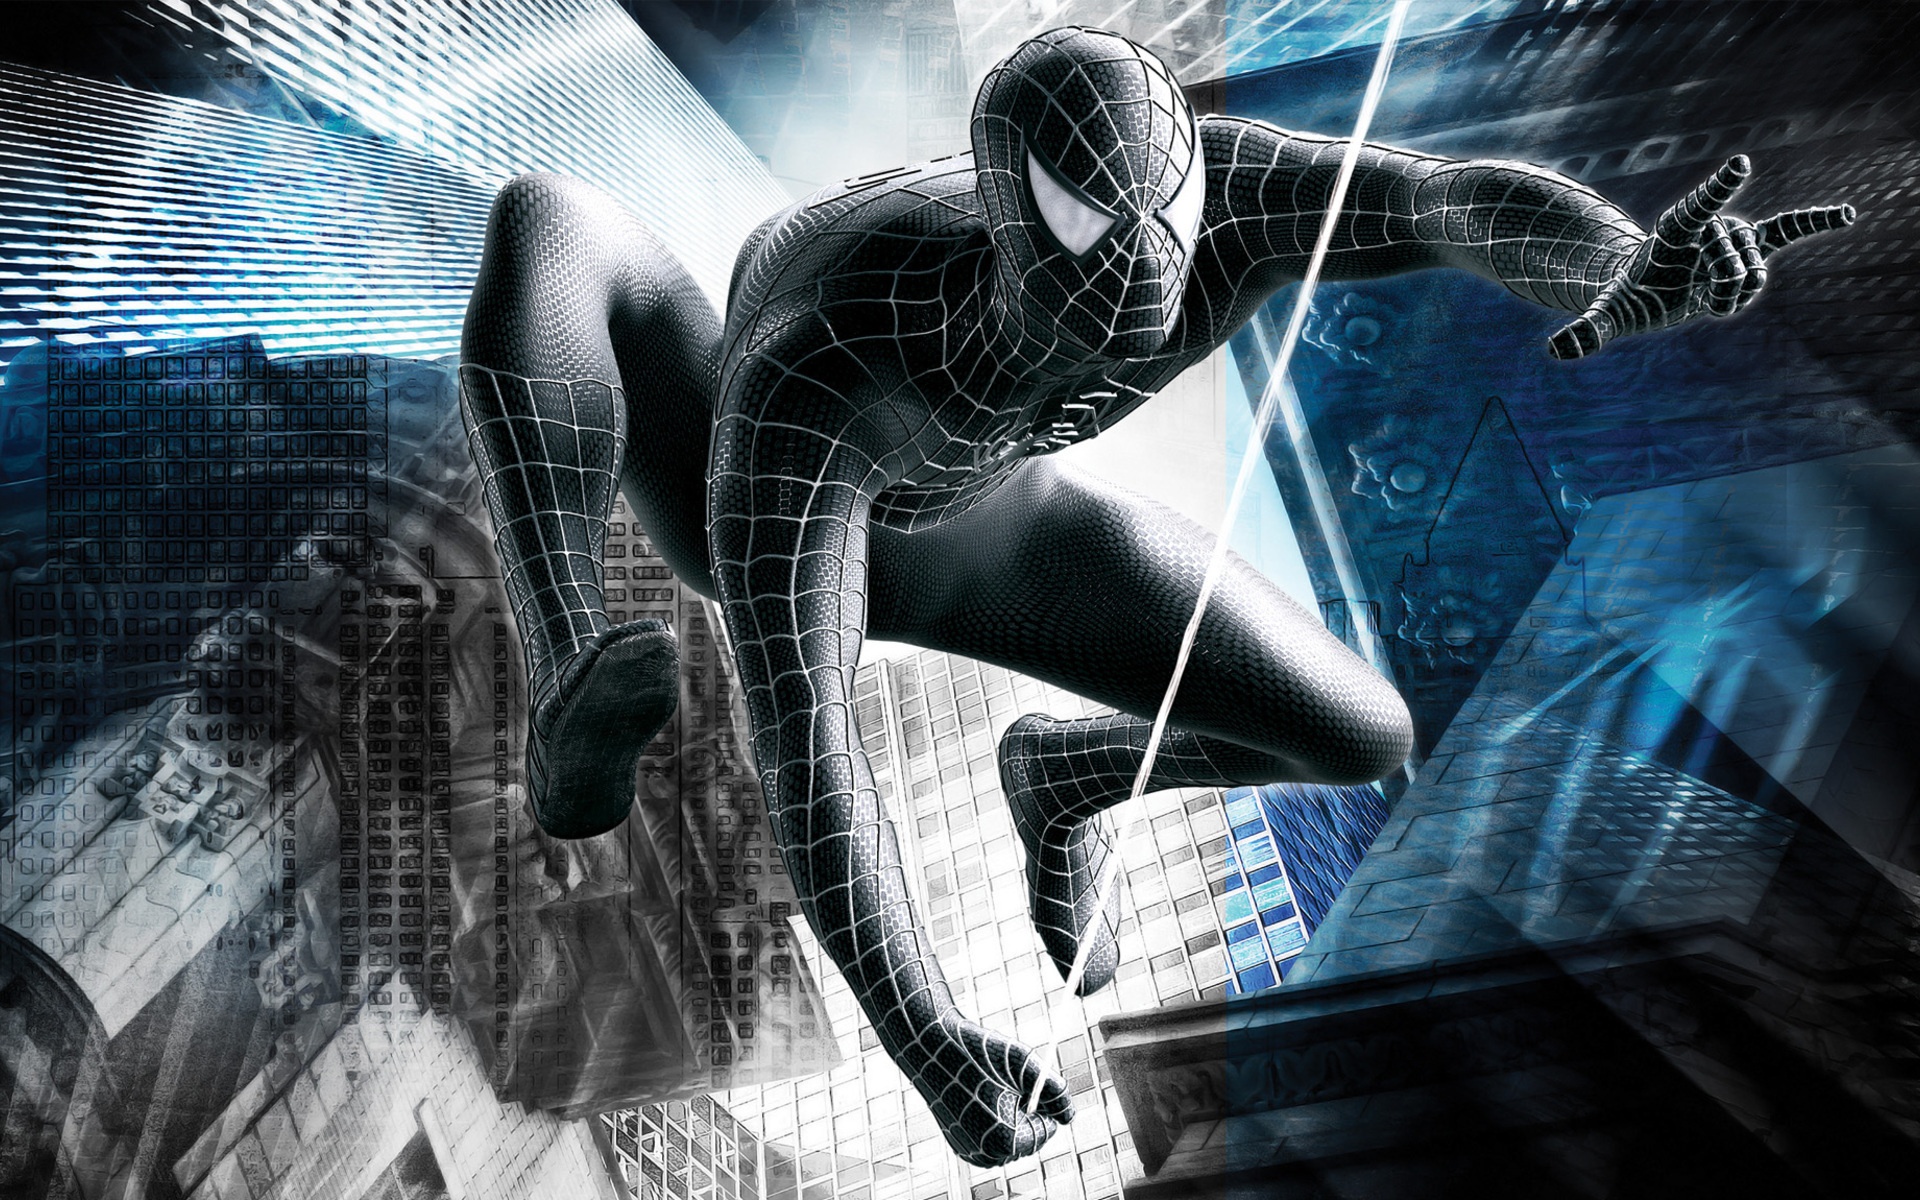 spiderman fondos de pantalla hd,diseño gráfico,personaje de ficción,cg artwork,hombre araña,ilustración